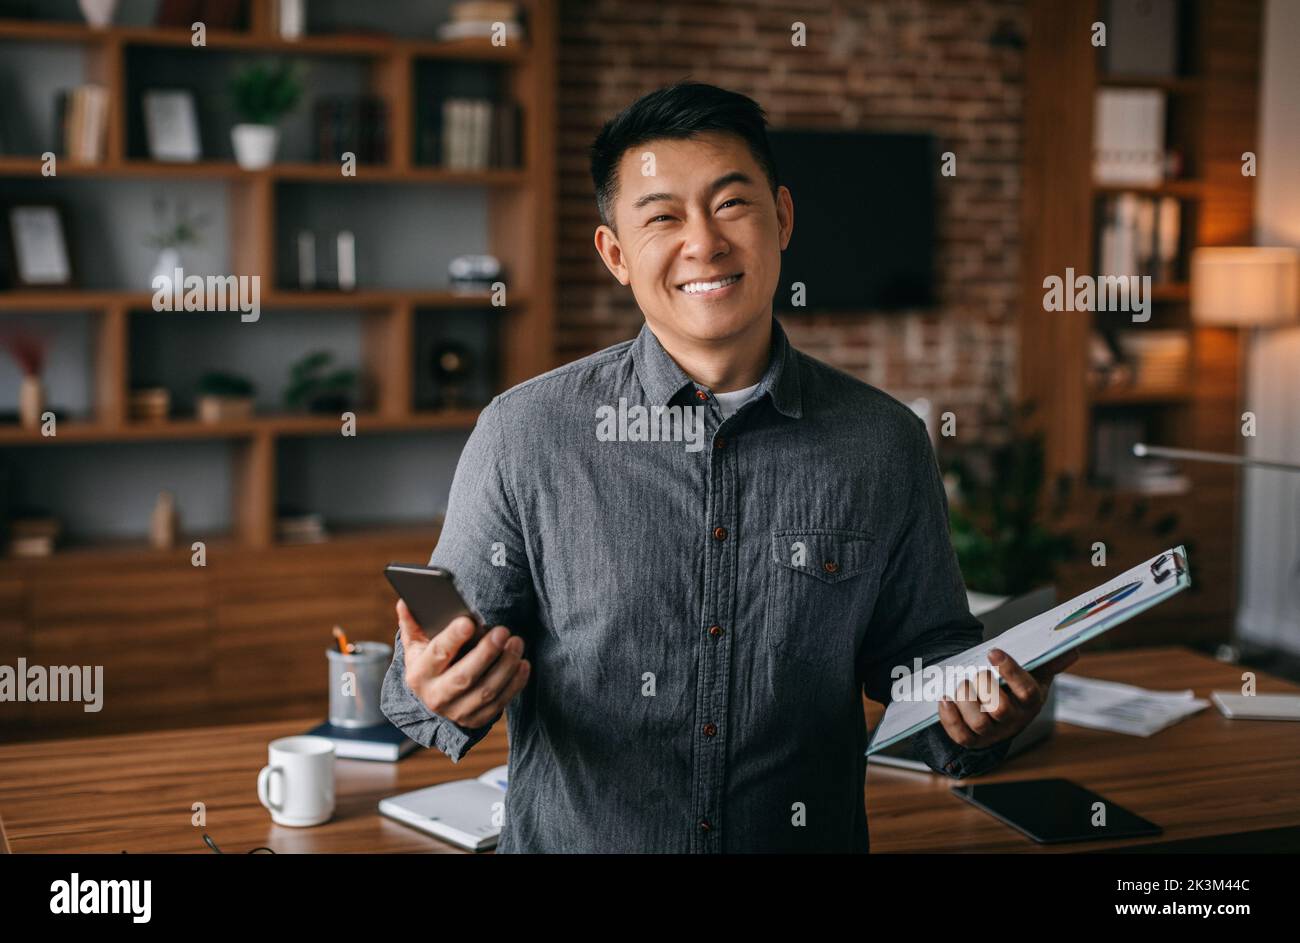 Homme d'affaires travaille à la maison. Joyeux homme chinois d'âge moyen réussi avec tablette et téléphone à l'intérieur du bureau Banque D'Images